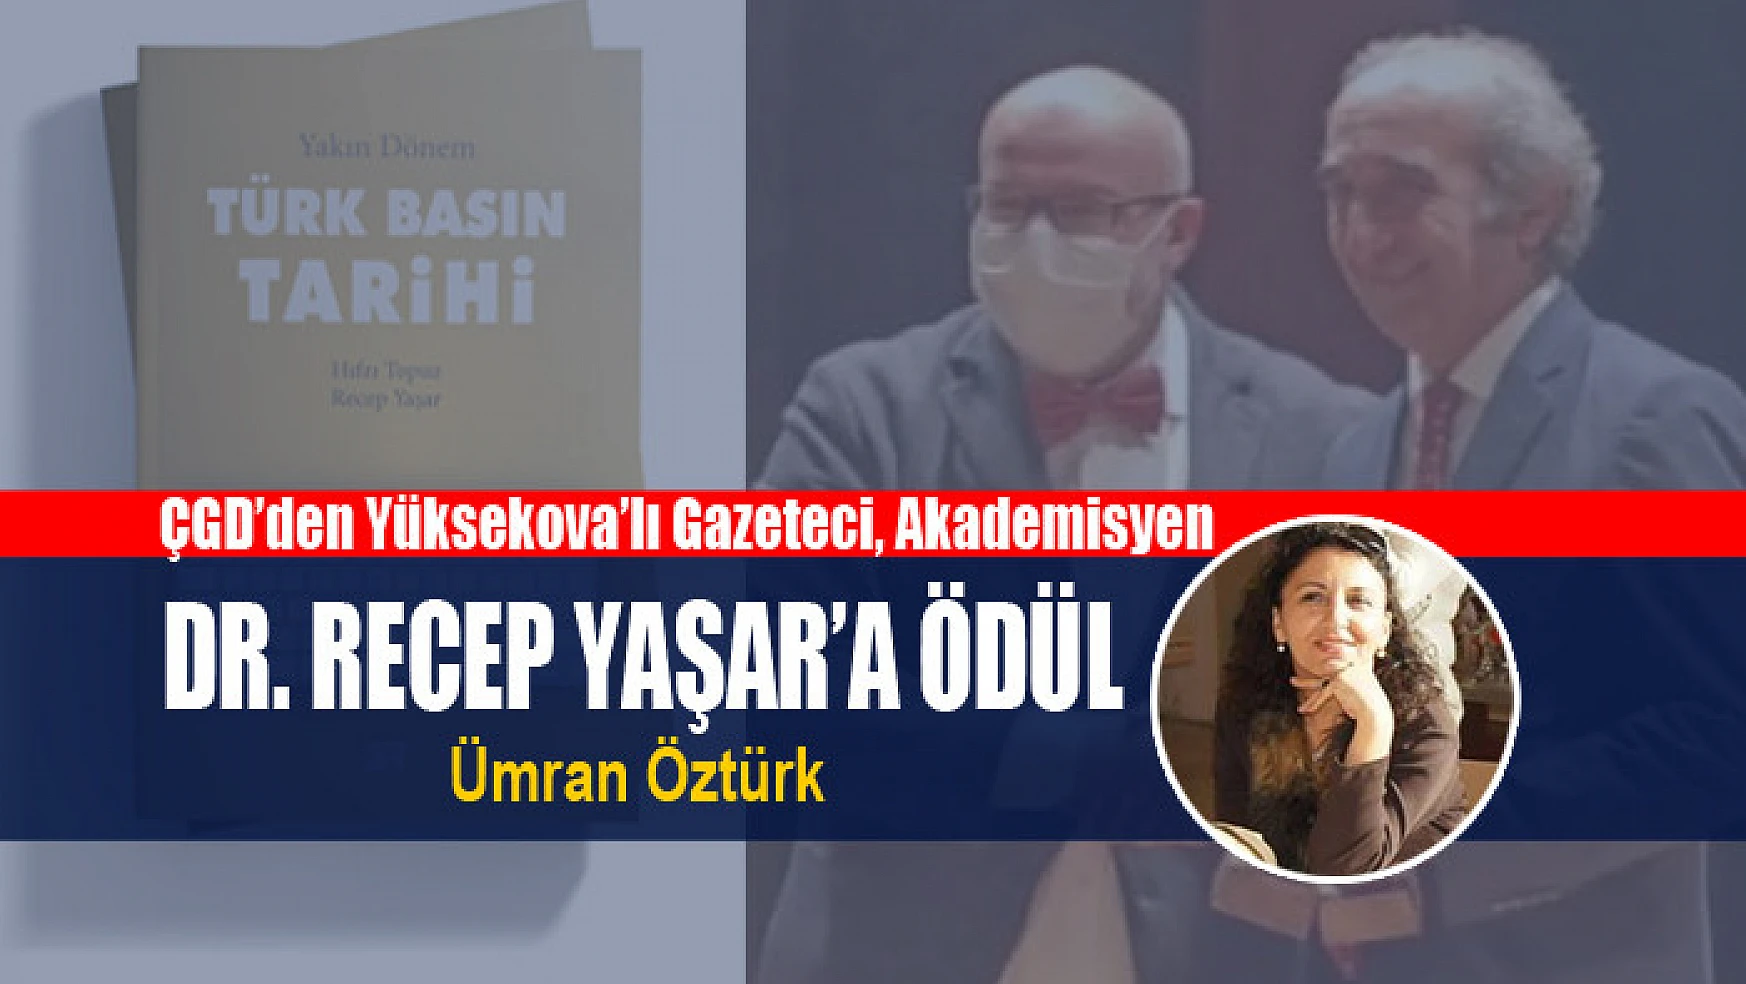 ÇGD'den Yüksekova'lı Gazeteci, Akademisyen Dr. Recep Yaşar'a Ödül